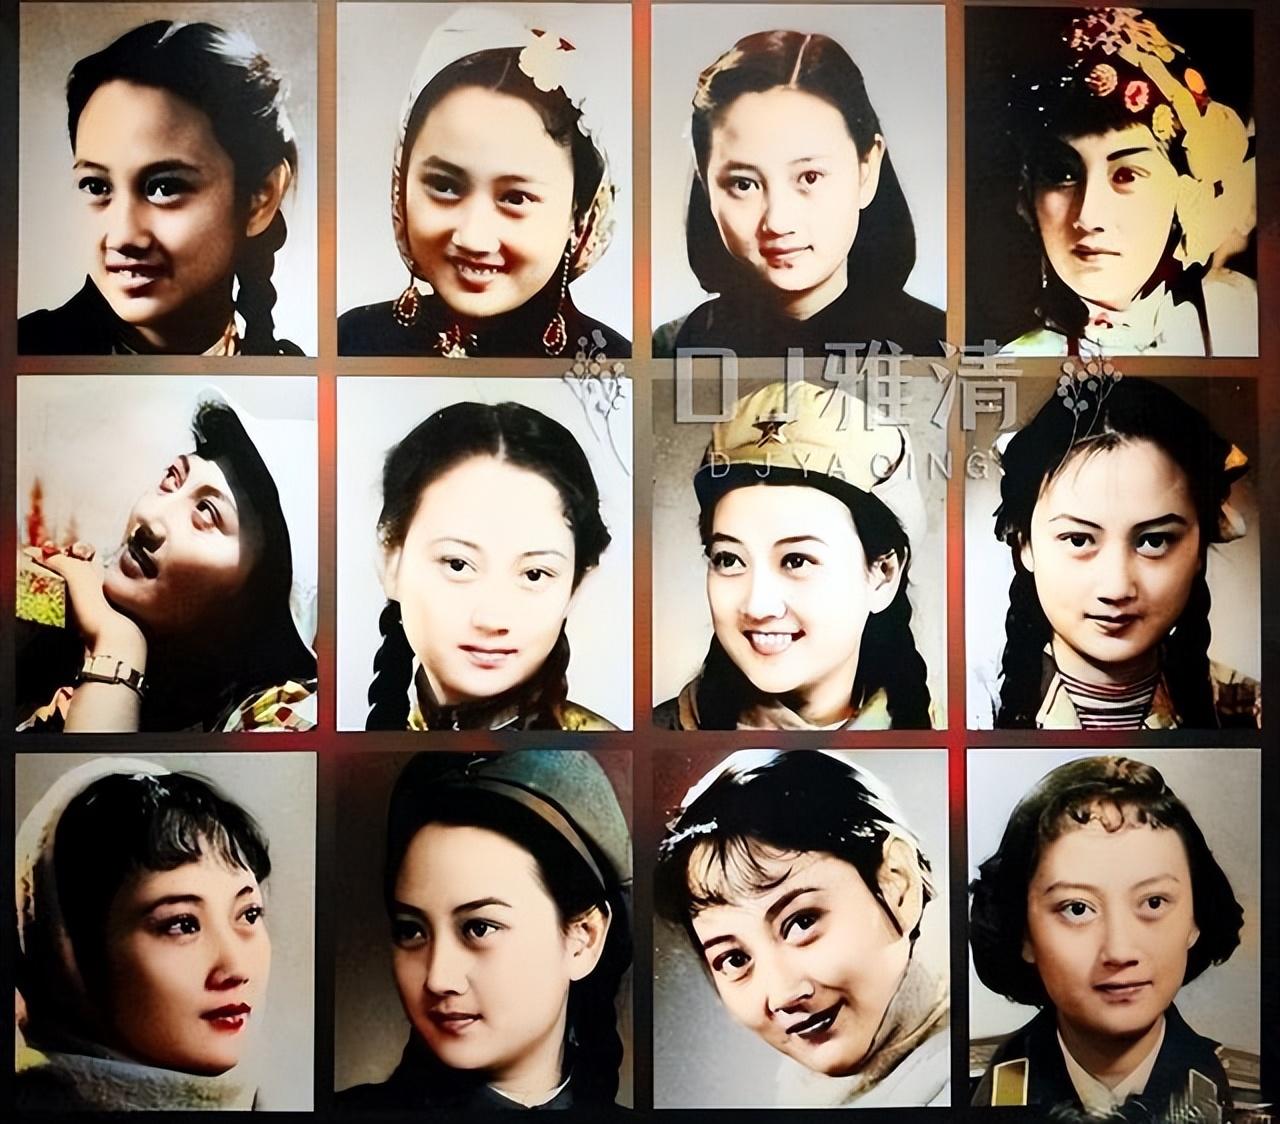 铿锵玫瑰王晓棠 最美女将军 做演员是无冕影后 做厂长则是霸气铁娘子